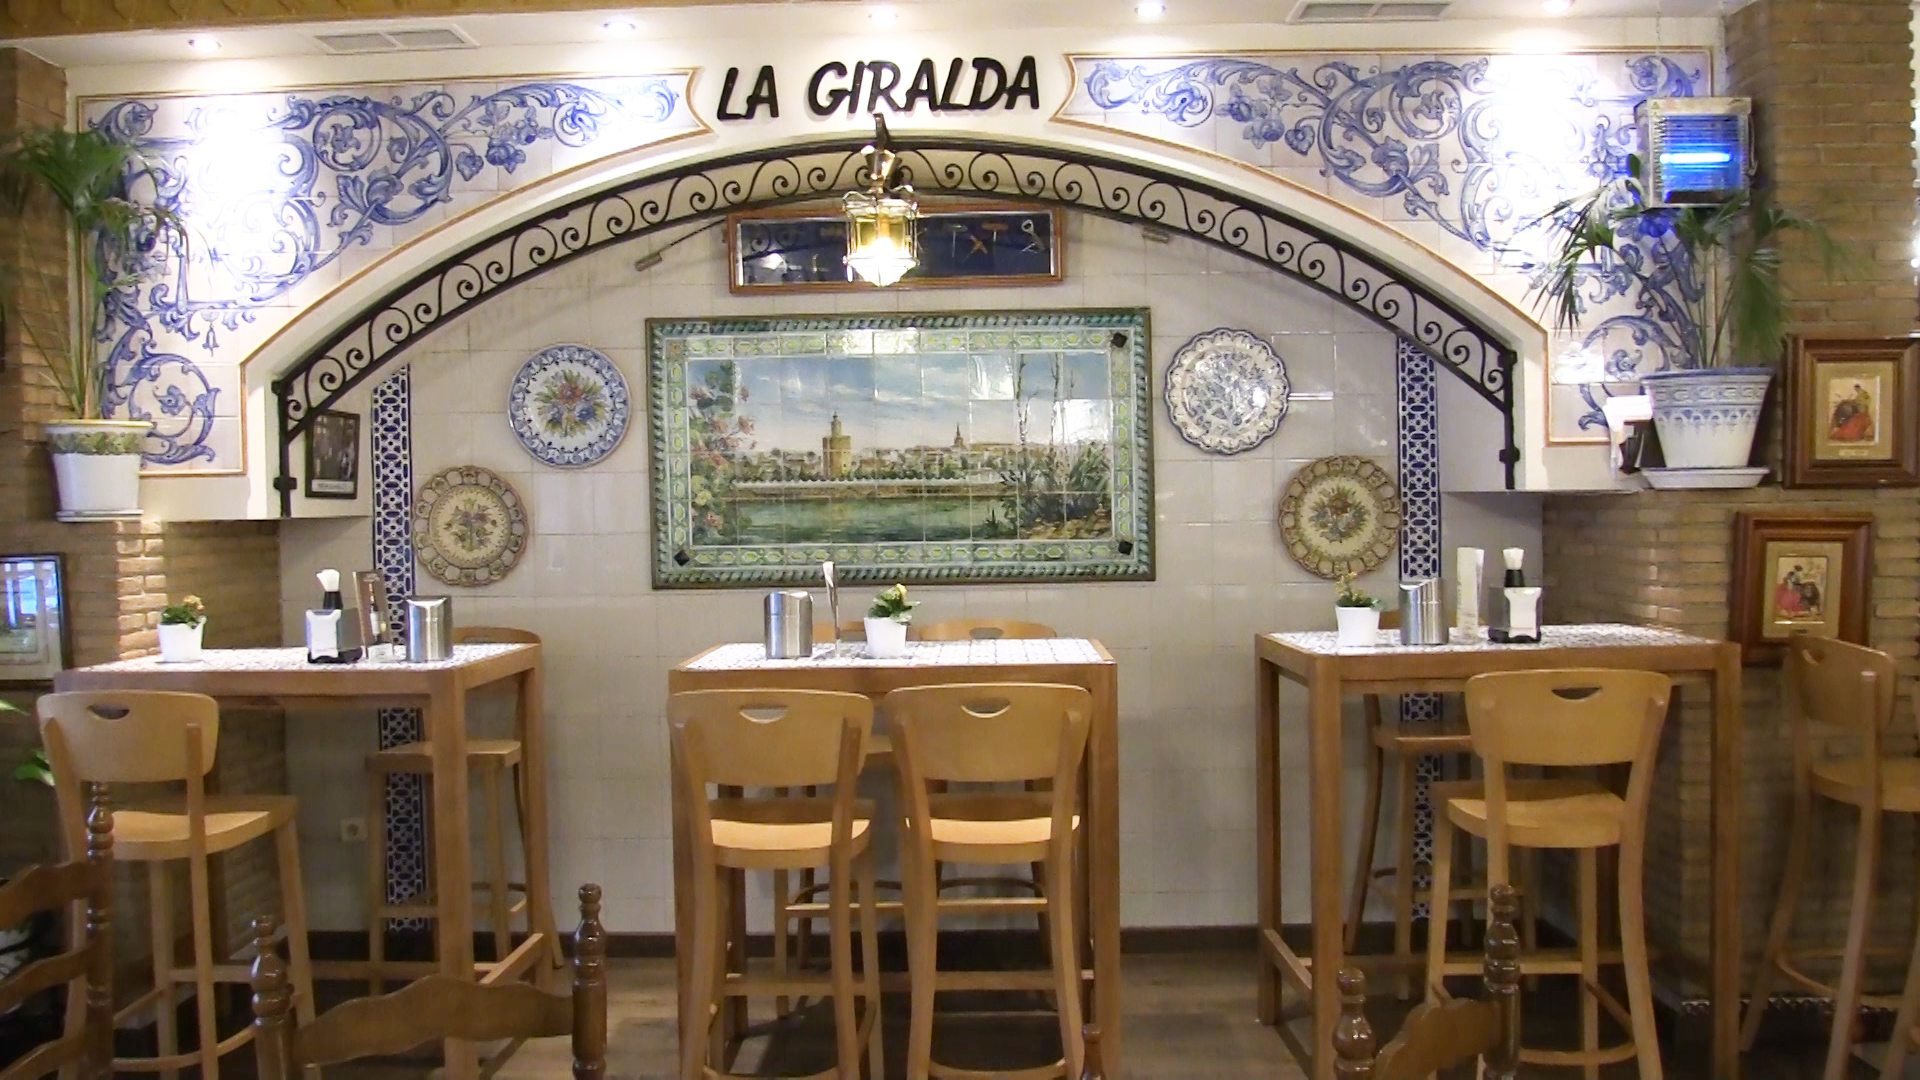 Imagen del restaurante "La Giralda". Foto EFEAGRO Cristian Gerhardt